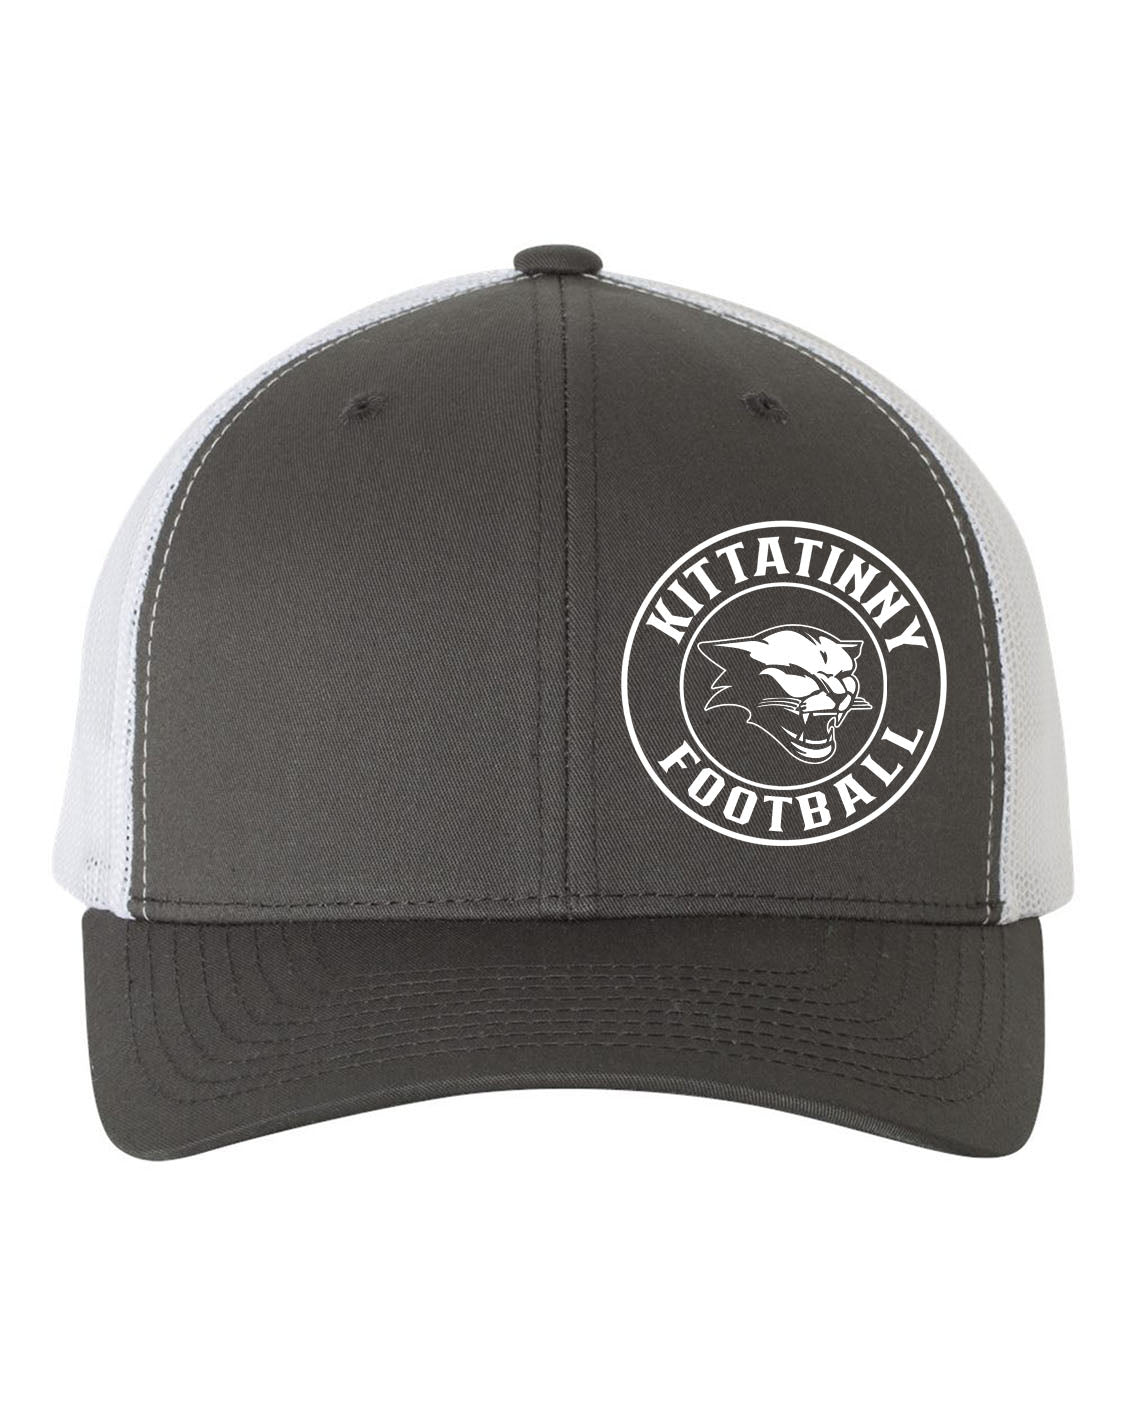 Kittatinny Football design 5 Trucker Hat